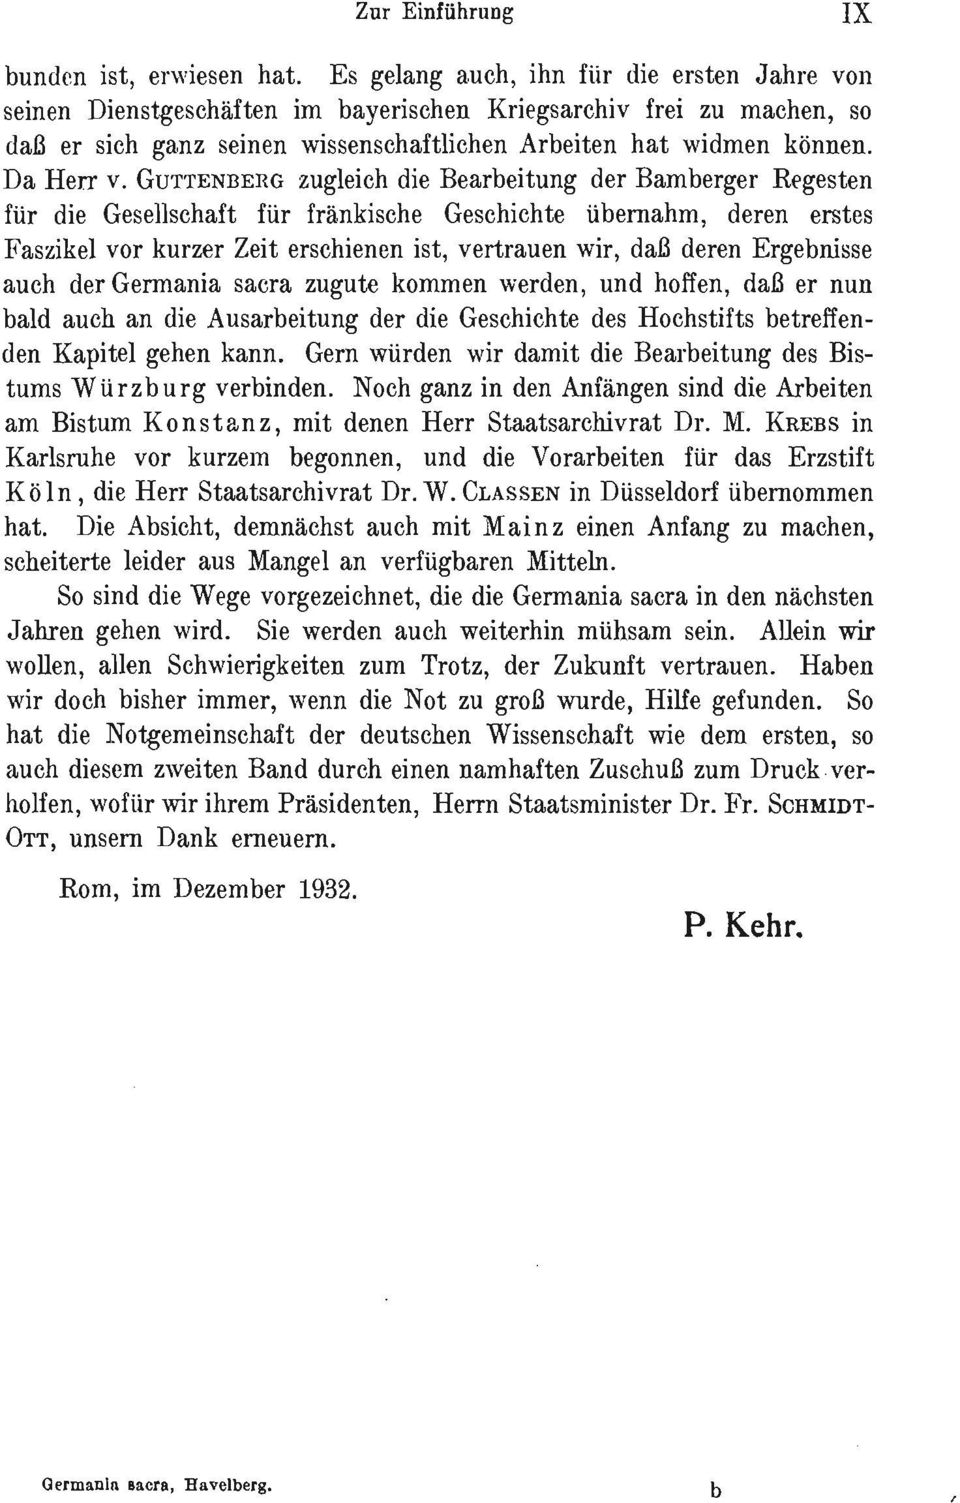 GUTTENBERG zugleich die Bearbeitung der Bamberger Regesten für die Gesellschaft für fränkische Geschichte übernahm, deren erstes Faszikel vor kurzer Zeit erschienen ist, vertrauen wir, daß deren